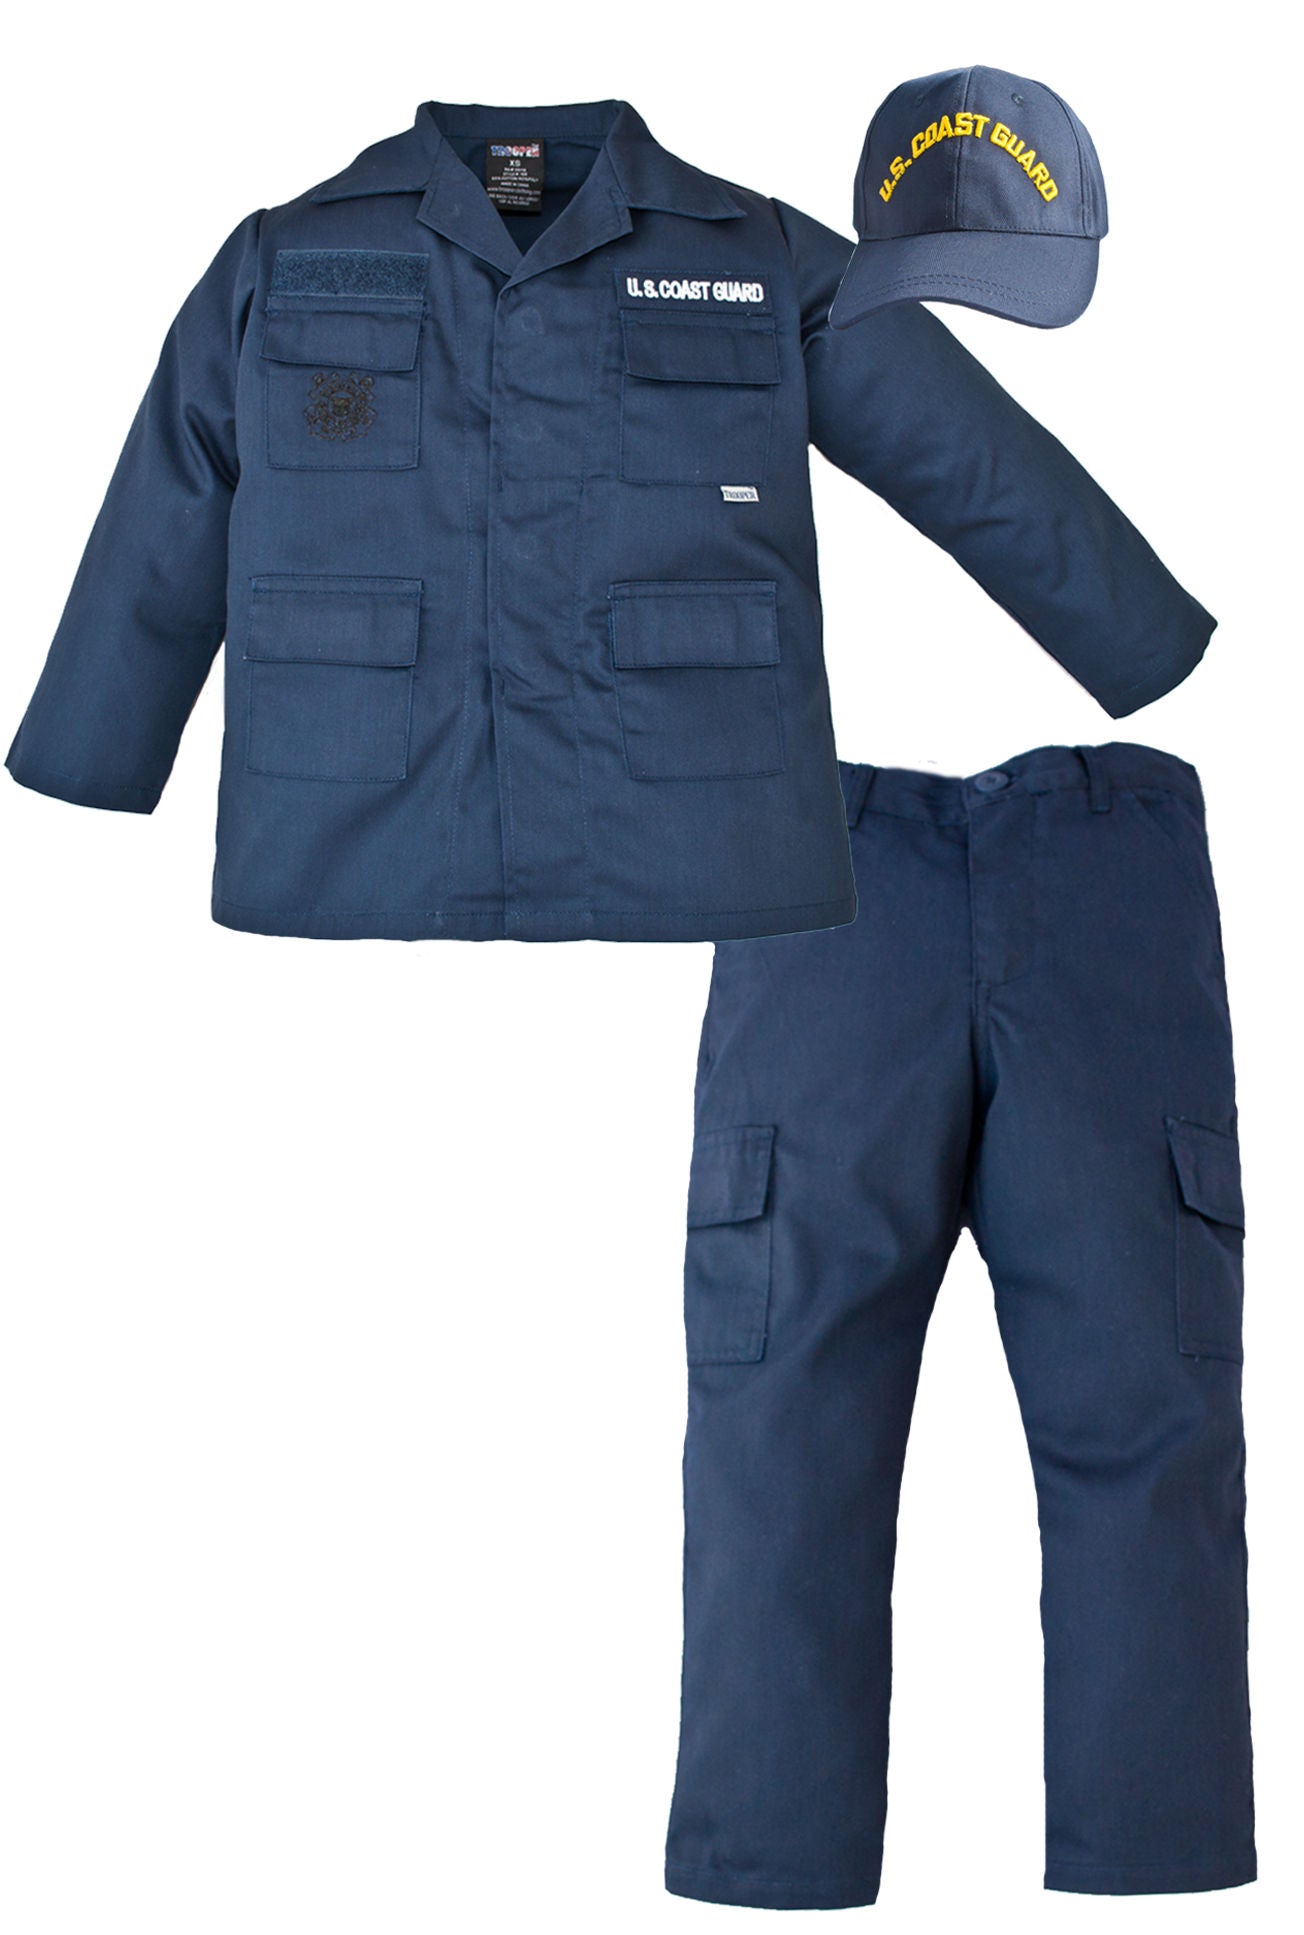 Kids U.S. Coast Guard Uniform - 3 Piece Set